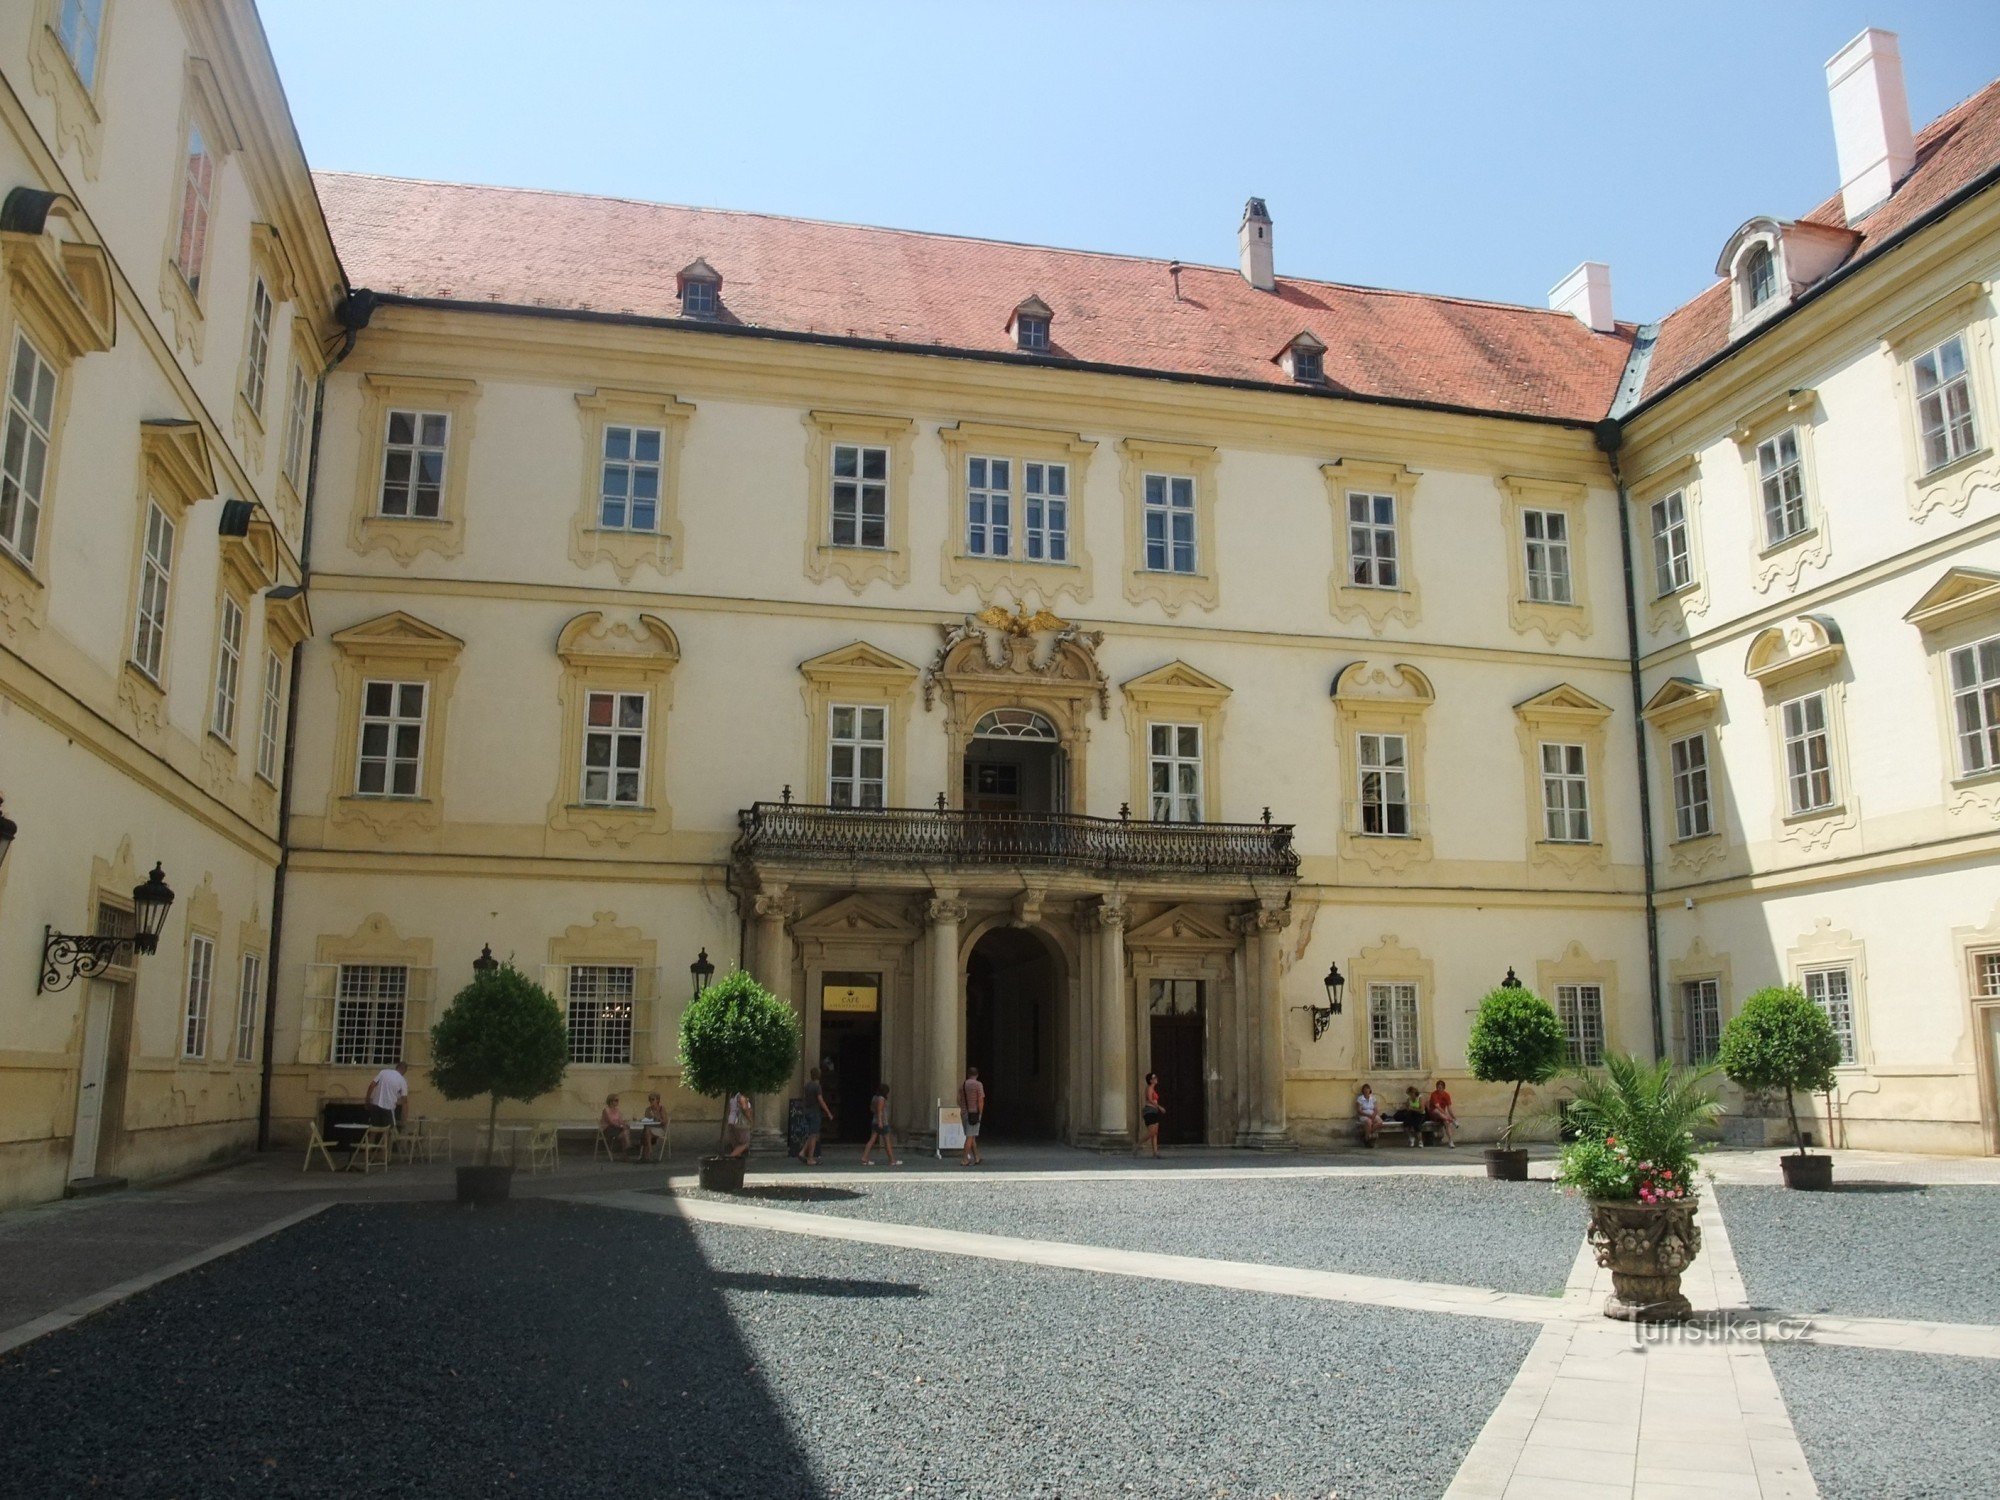 Valtice kastély - a liechtensteiniek egykori impozáns rezidenciája